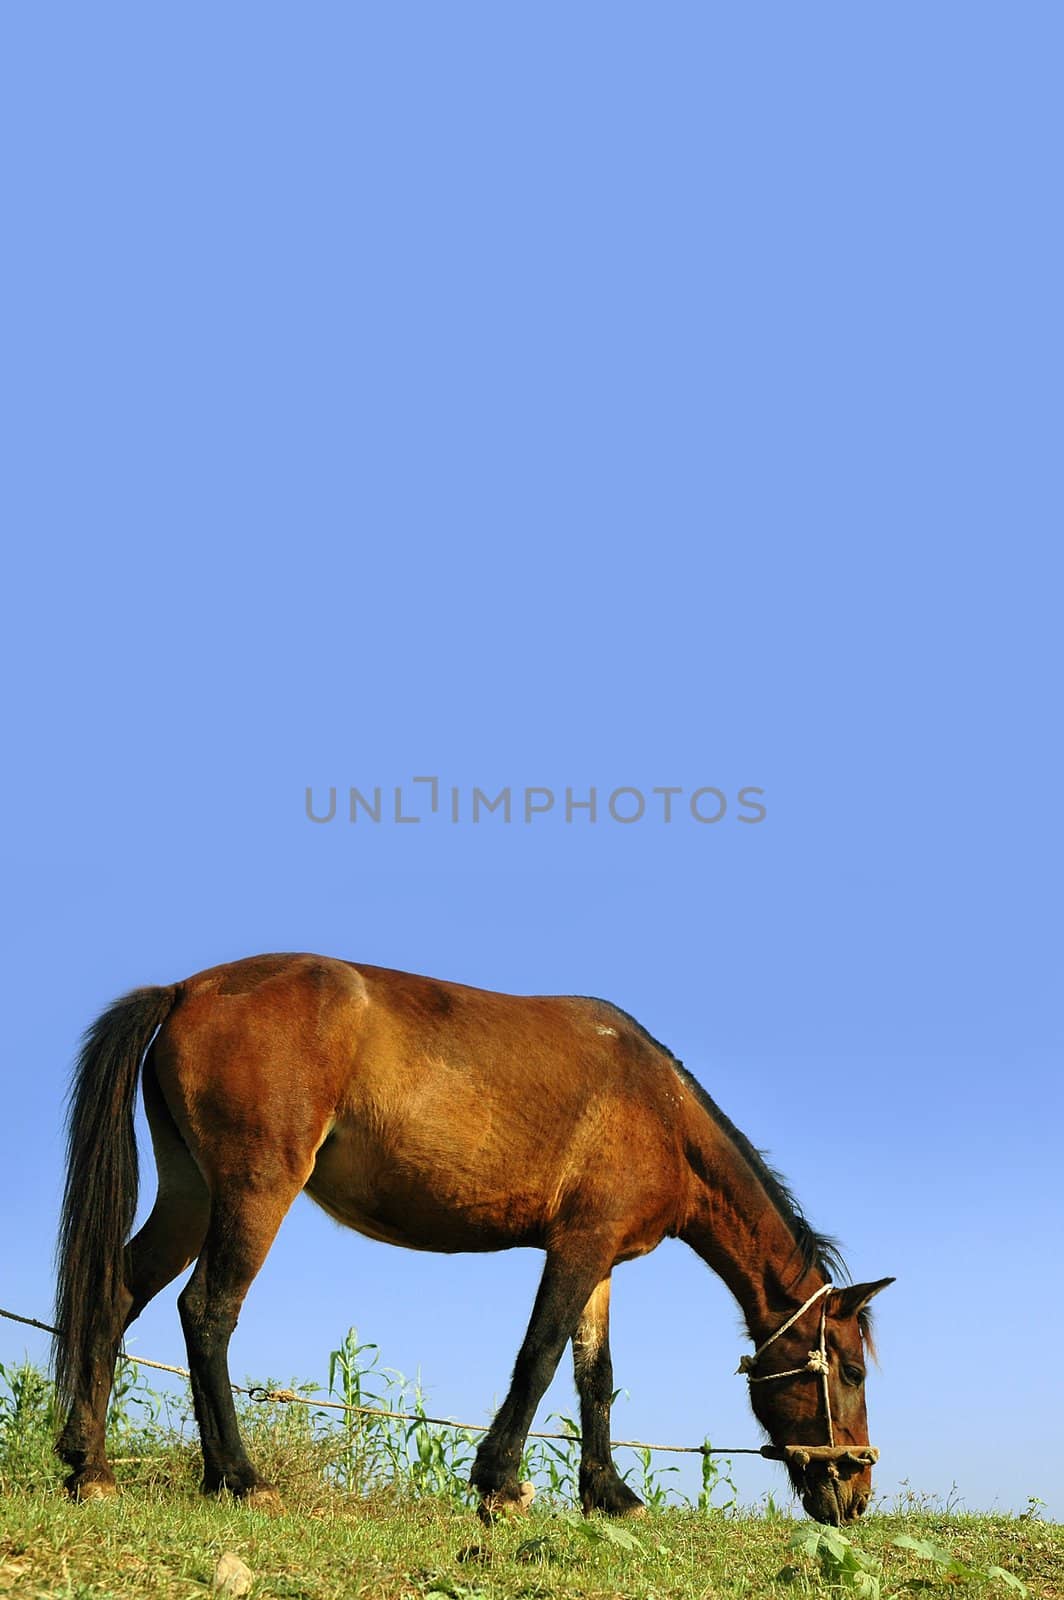 Horse on leash feeding on grass against blue sky